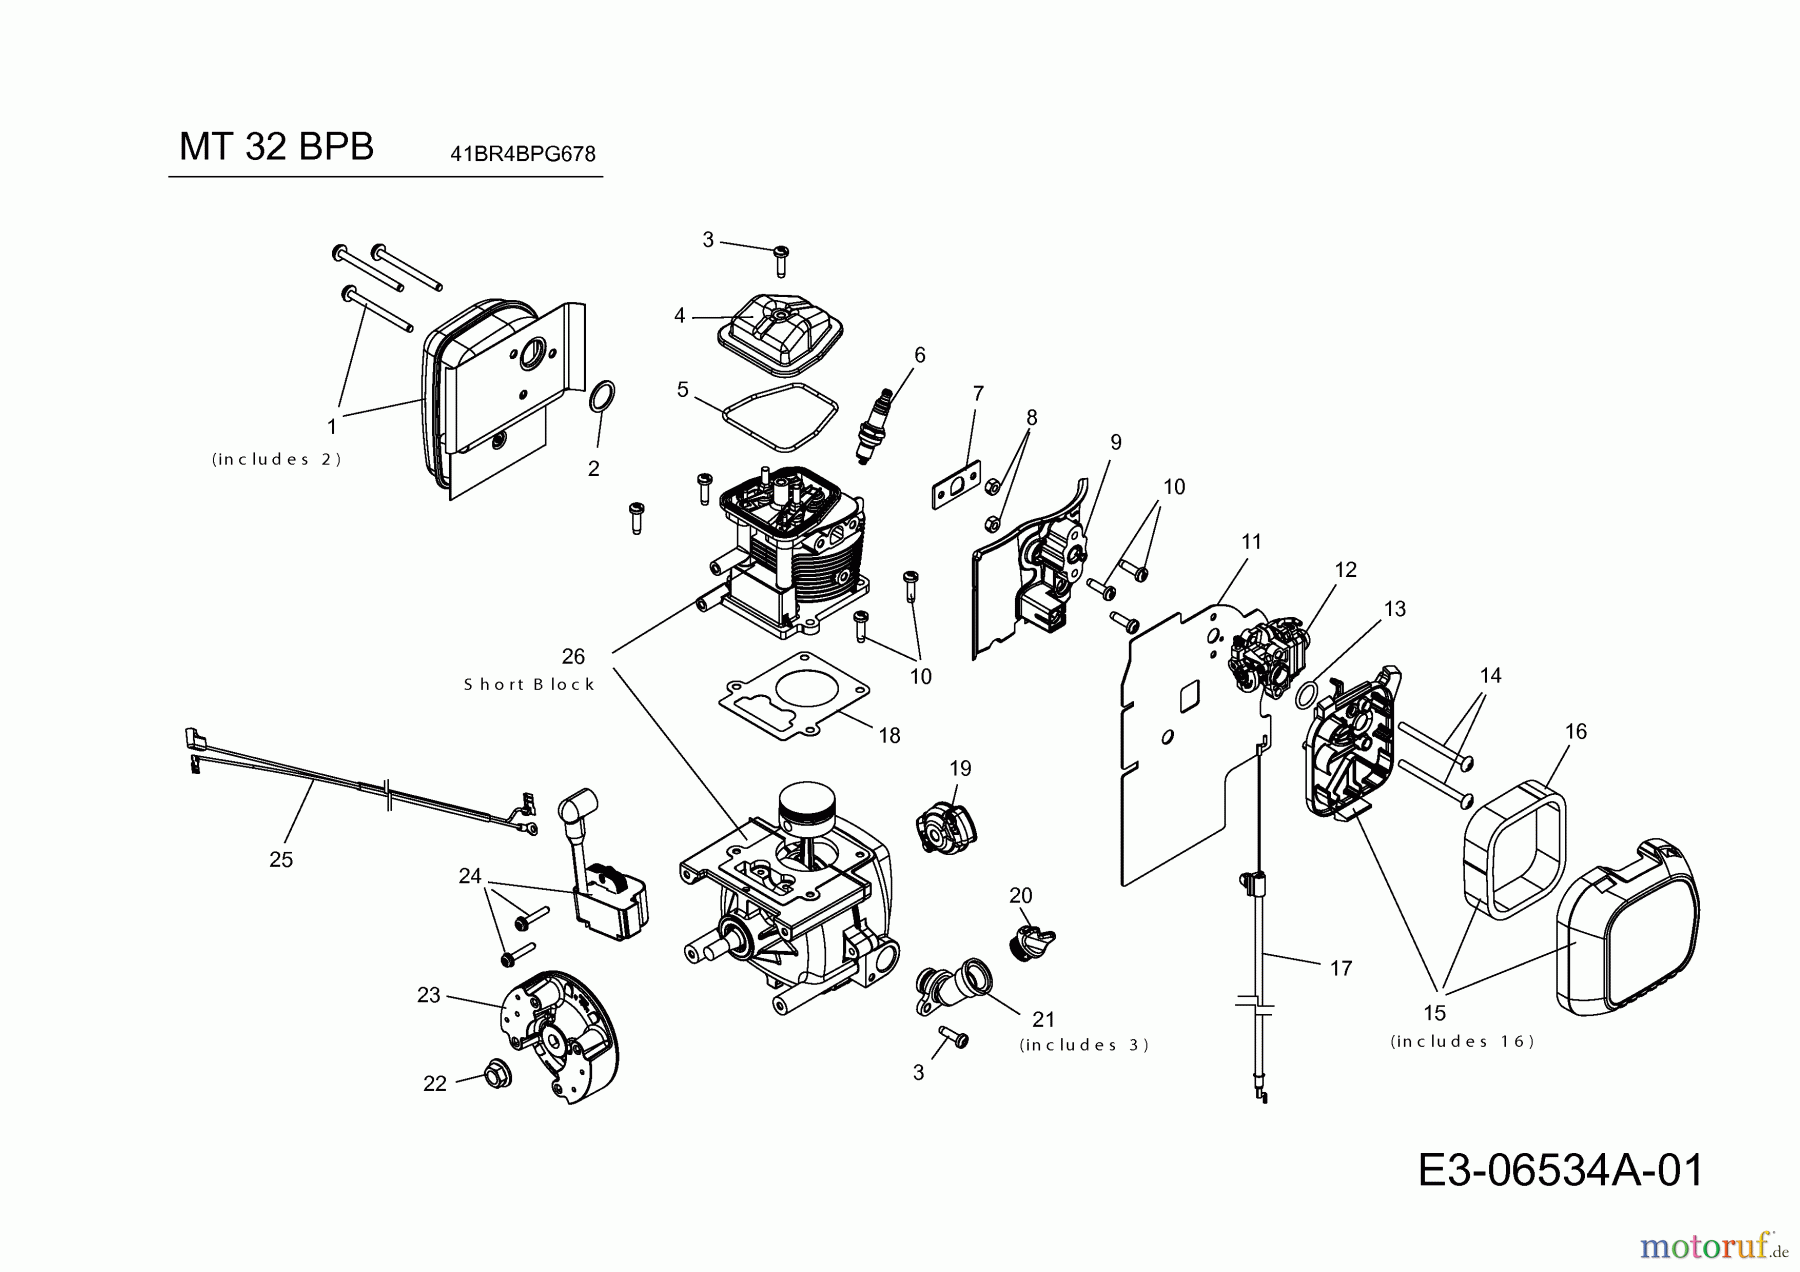  MTD Leaf blower, Blower vac MT 32 BPB 41BR4BPG678  (2020) Engine